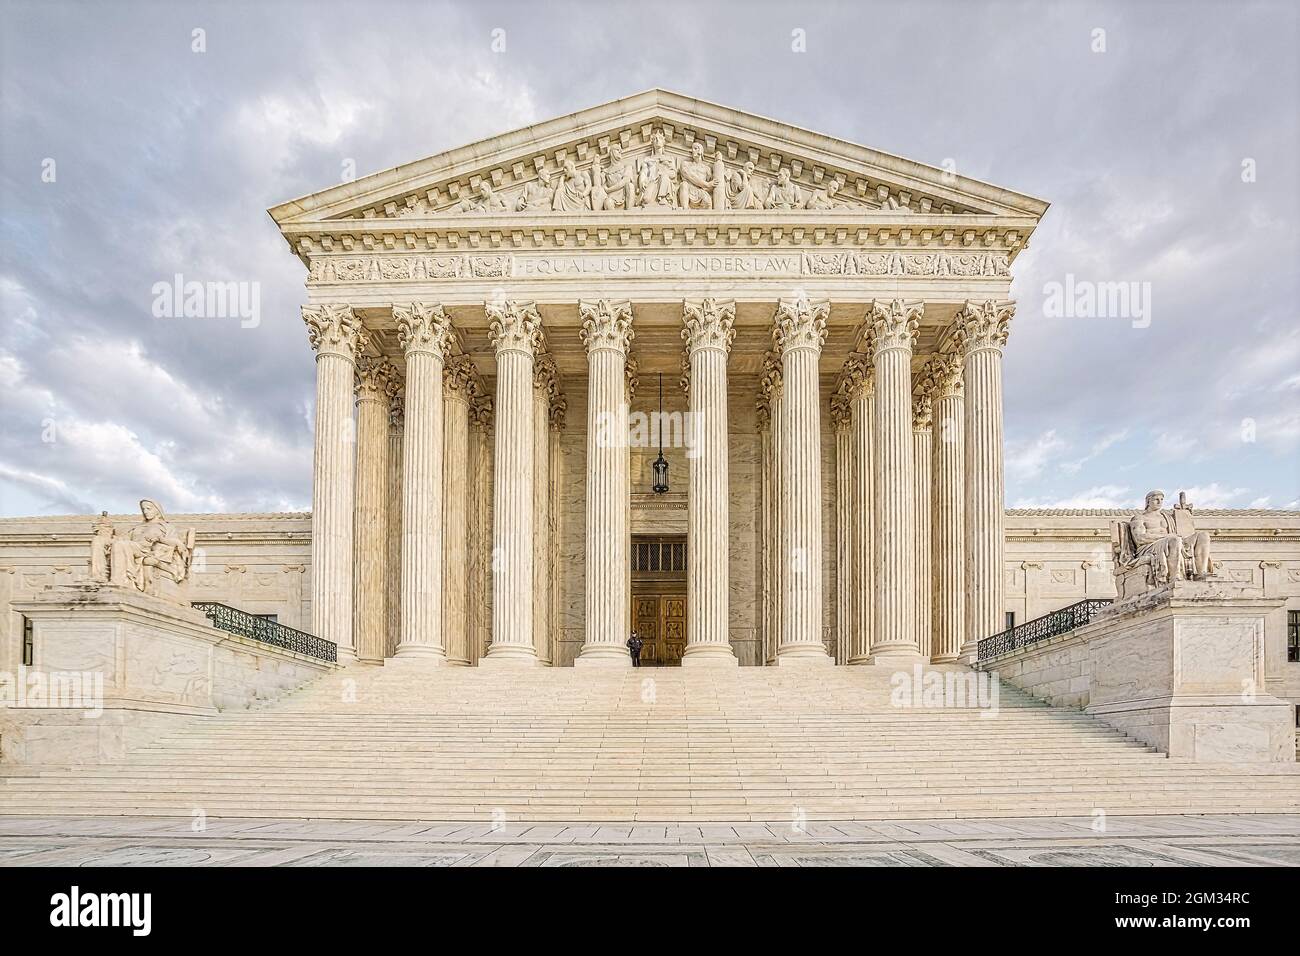 SCOTUS Equal Justice - Cour suprême des États-Unis à Washington DC. La plus haute cour fédérale des États-Unis avec son arc néoclassique Banque D'Images